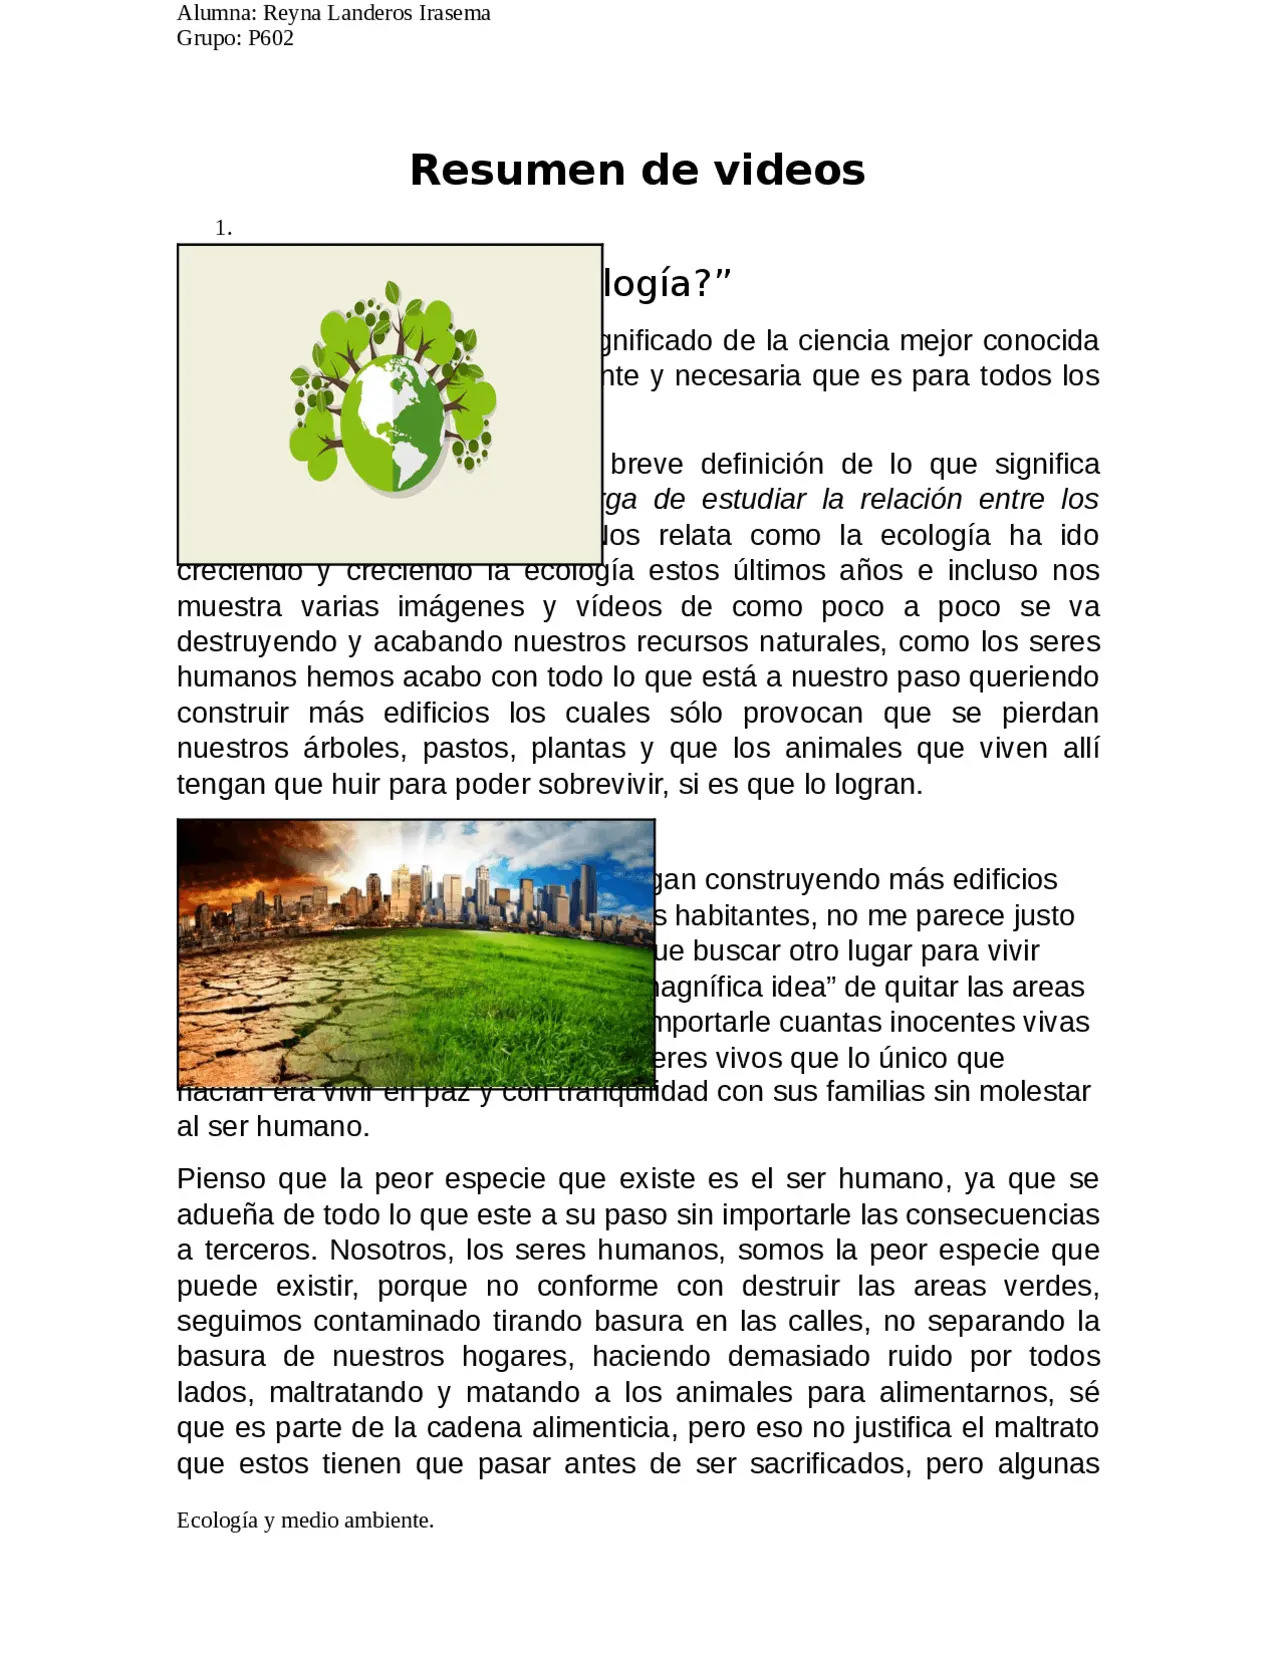 resumen de ecologia y medio ambiente - Cómo cuidamos la ecología y el medio ambiente